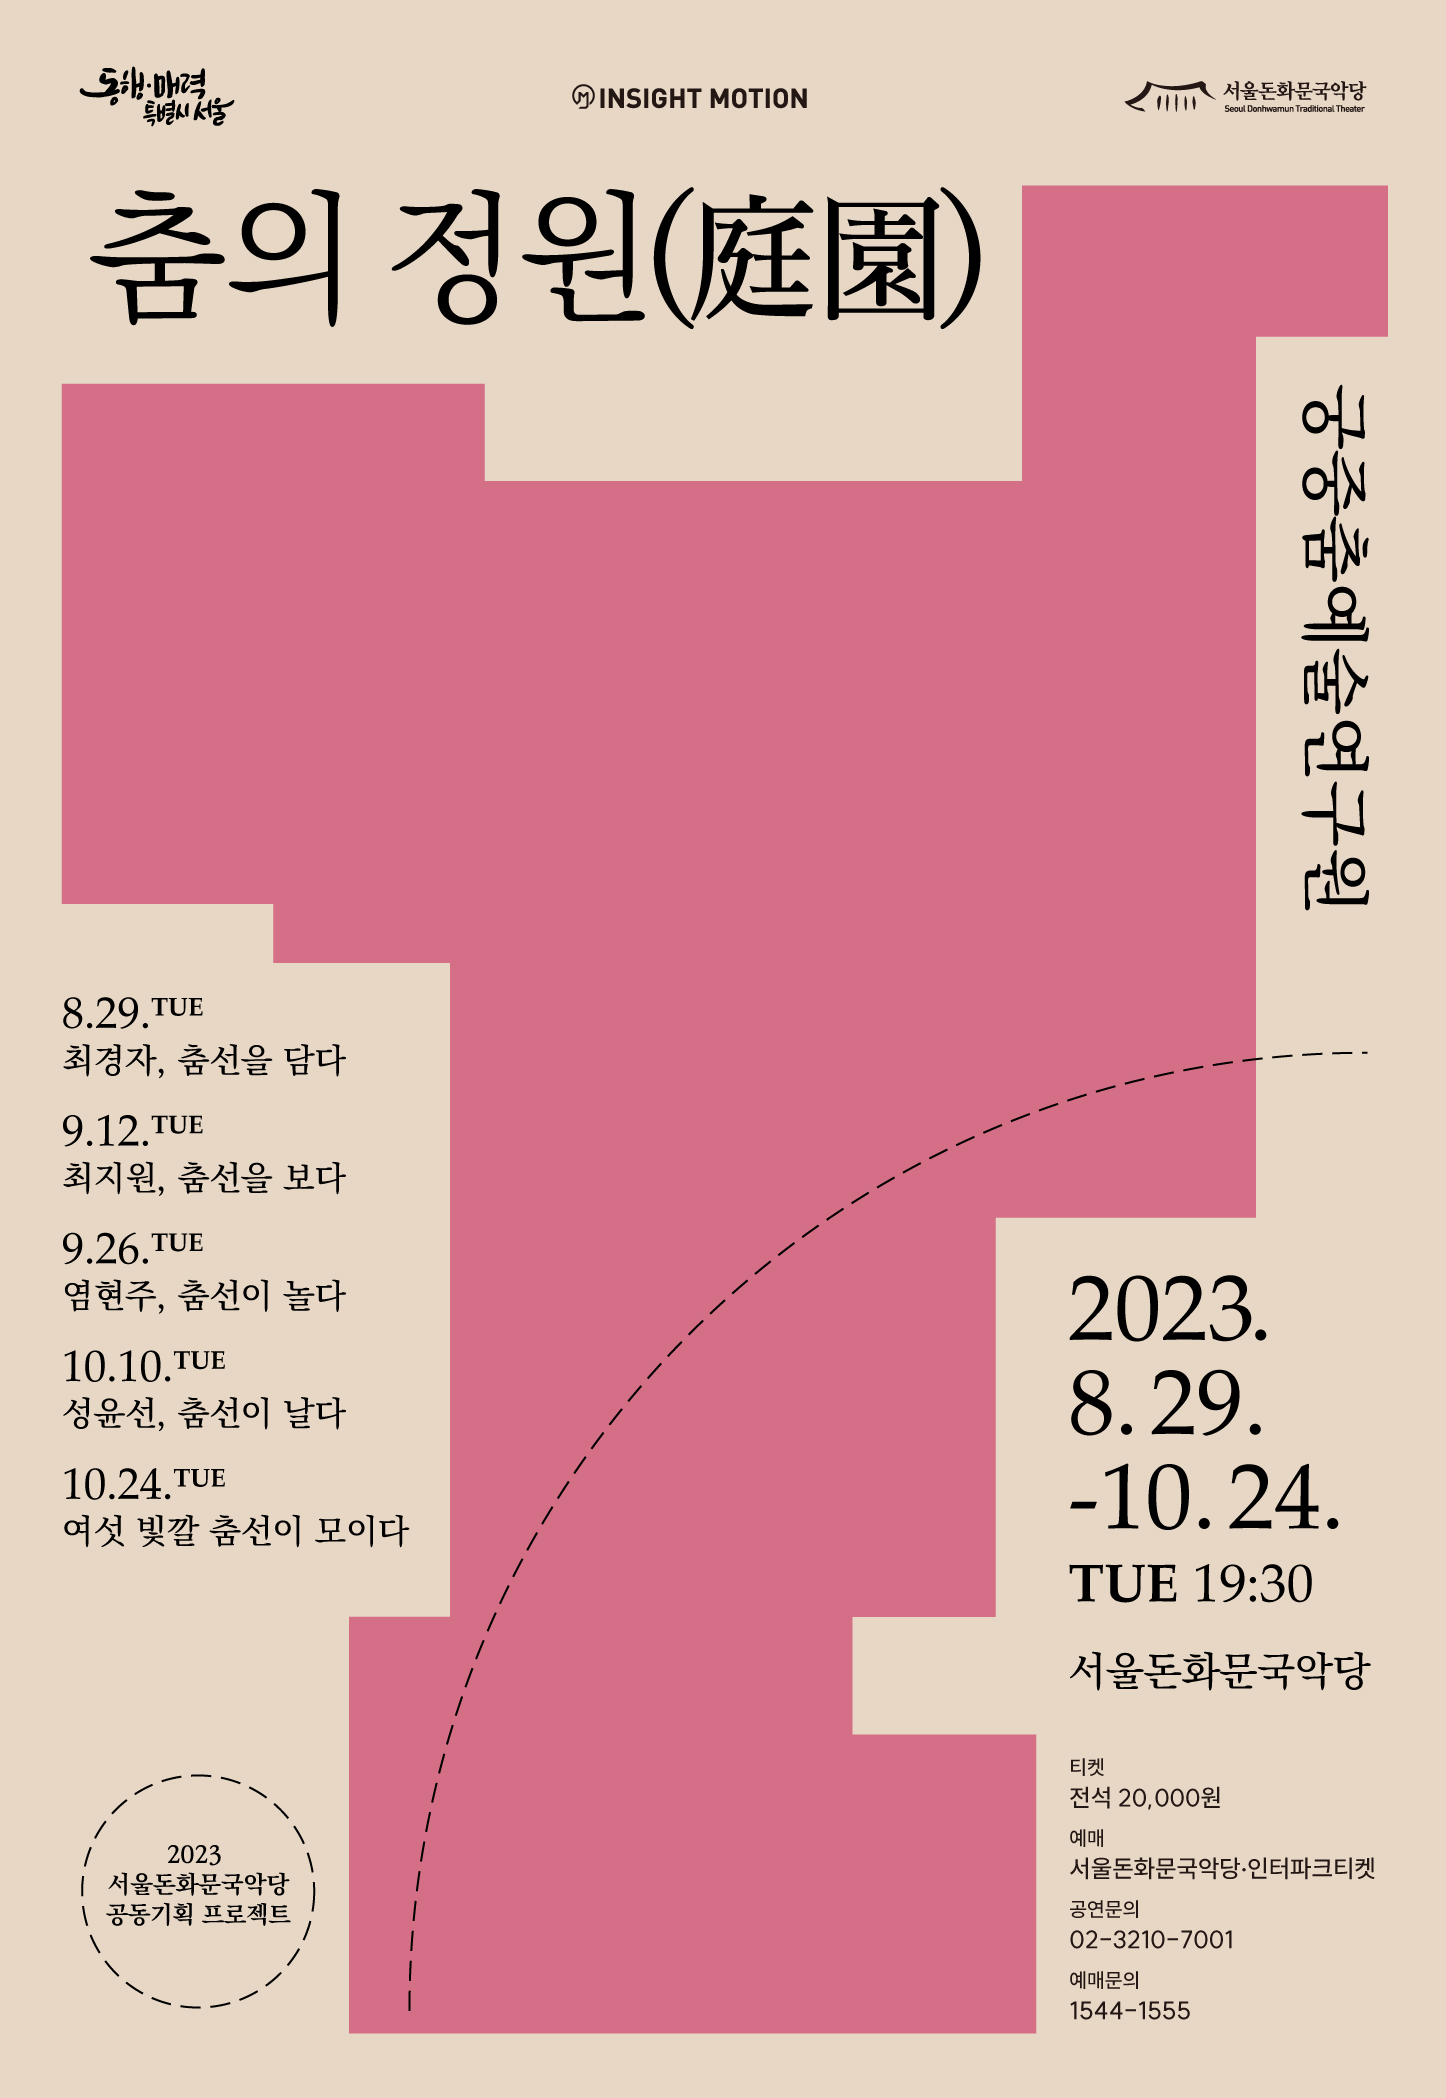 공연 포스터(8.29-10.24 격주 화요일 19:30)